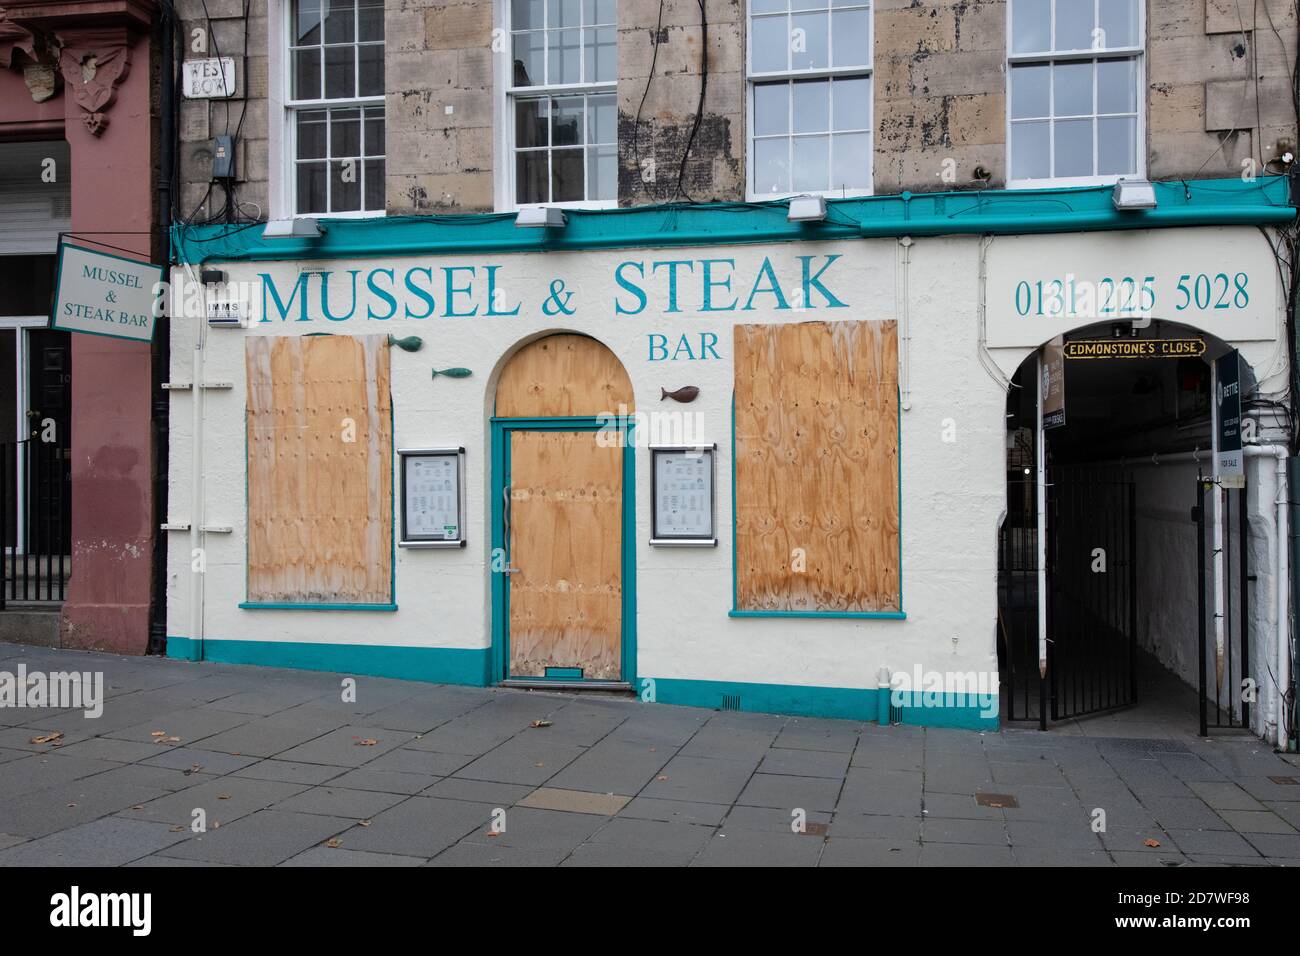 Während der Coronavirus-Pandemie wurden die Geschäfte Mussel und Steak Bar, Grassmarket, Edinburgh, Schottland, Großbritannien aufgenommen und geschlossen Stockfoto